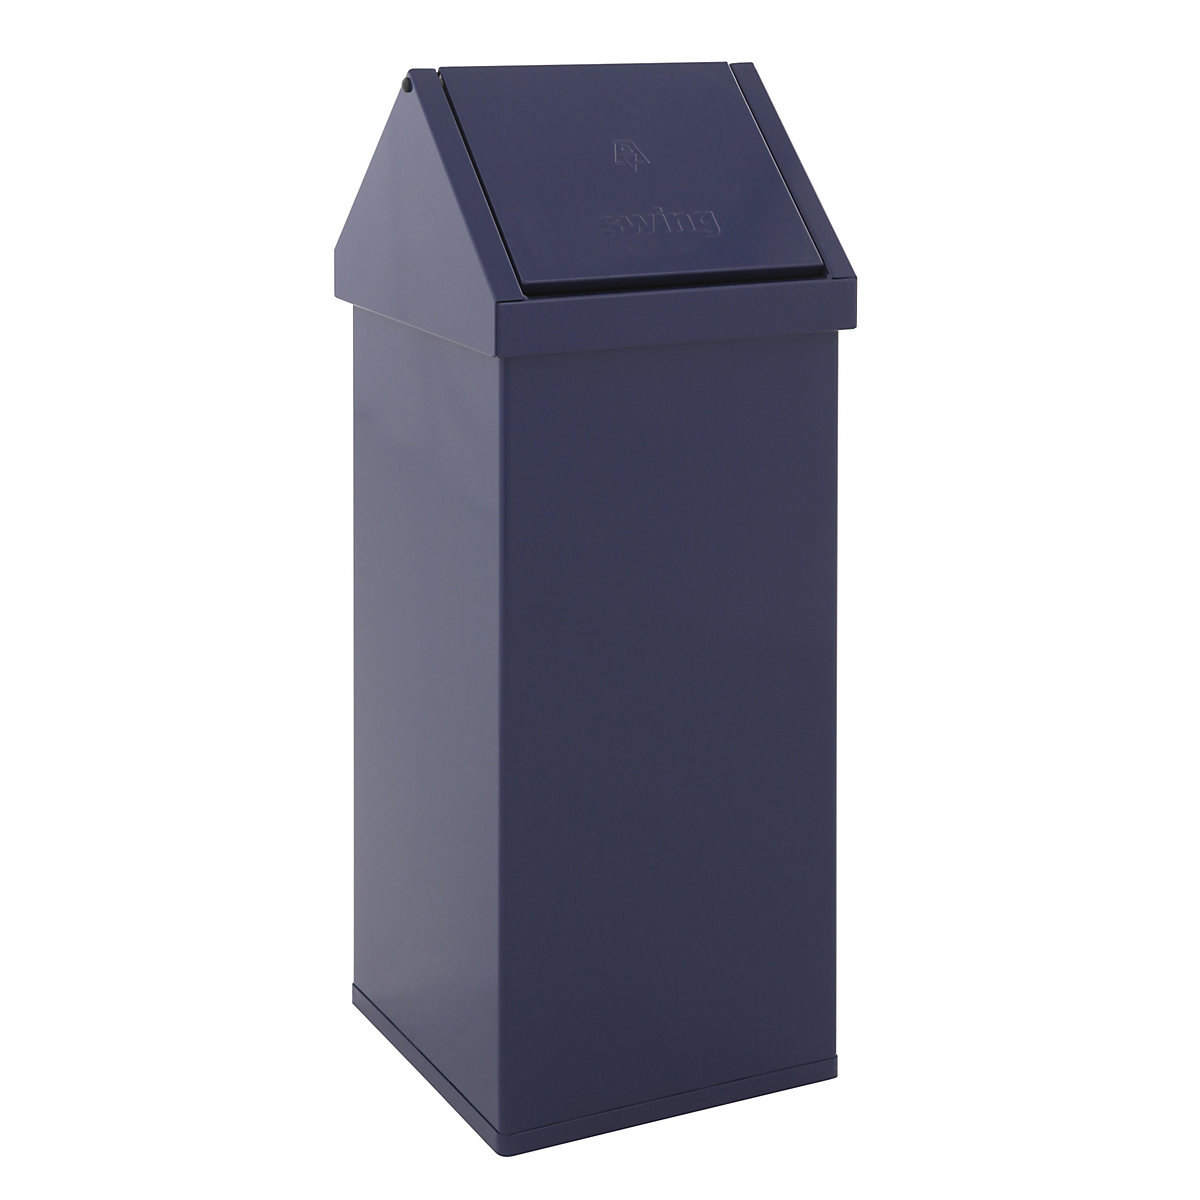 Posoda za odpadke z nihajnim pokrovom, prostornina 110 l, ŠxVxG 360 x 1000 x 360 mm, aluminij, modre barve-3